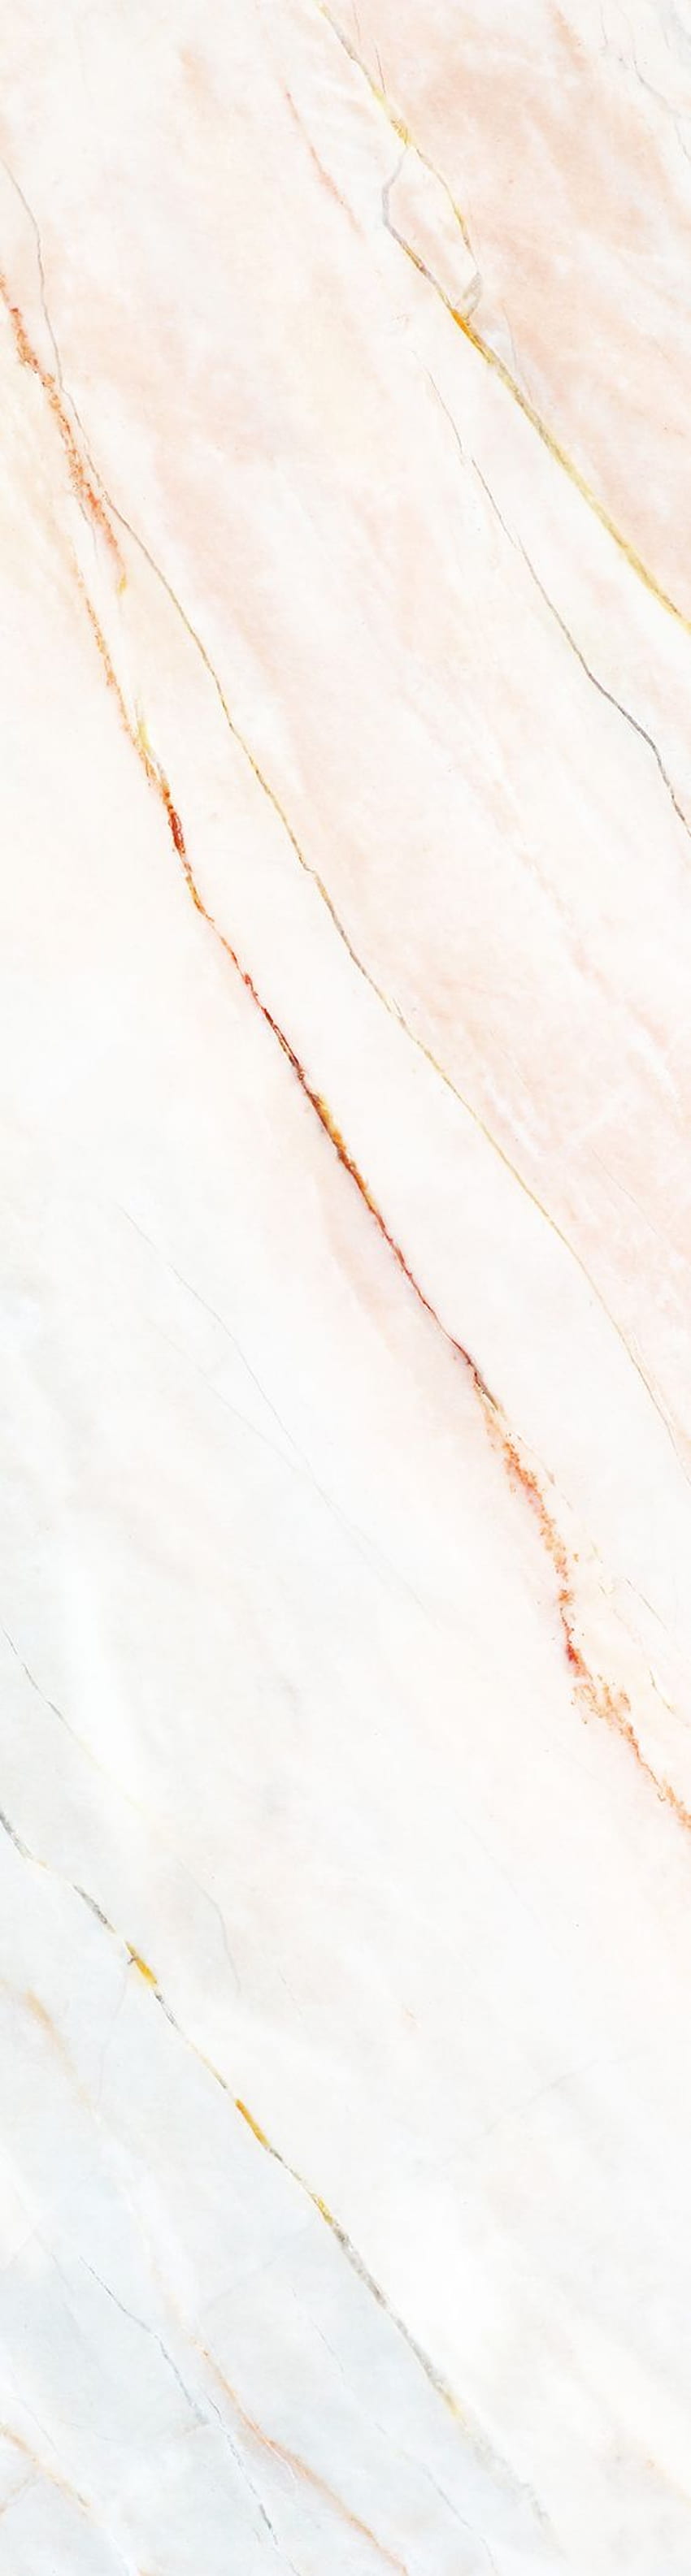 Mural Marmer Lembut Putih & Merah Muda. Hovia. Marmer merah muda, Marmer, Marmer merah muda wallpaper ponsel HD